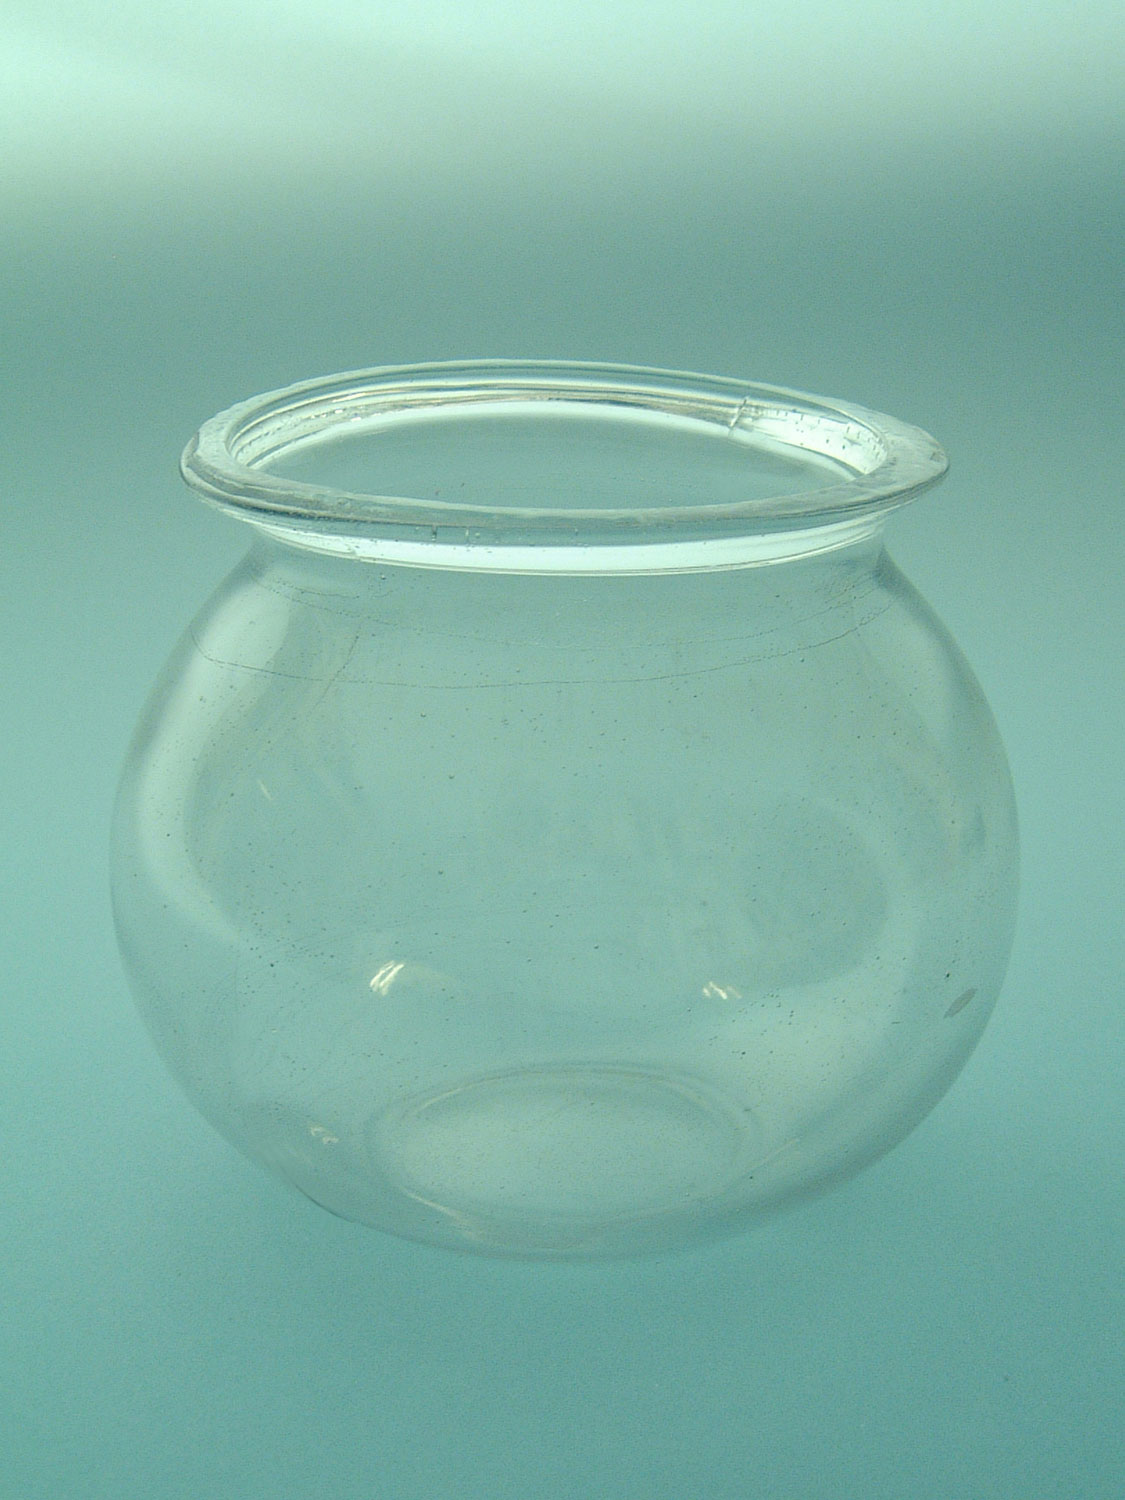 Suikerglas goudvissenkom. Afmeting 15,5 x ø 16,5 cm.